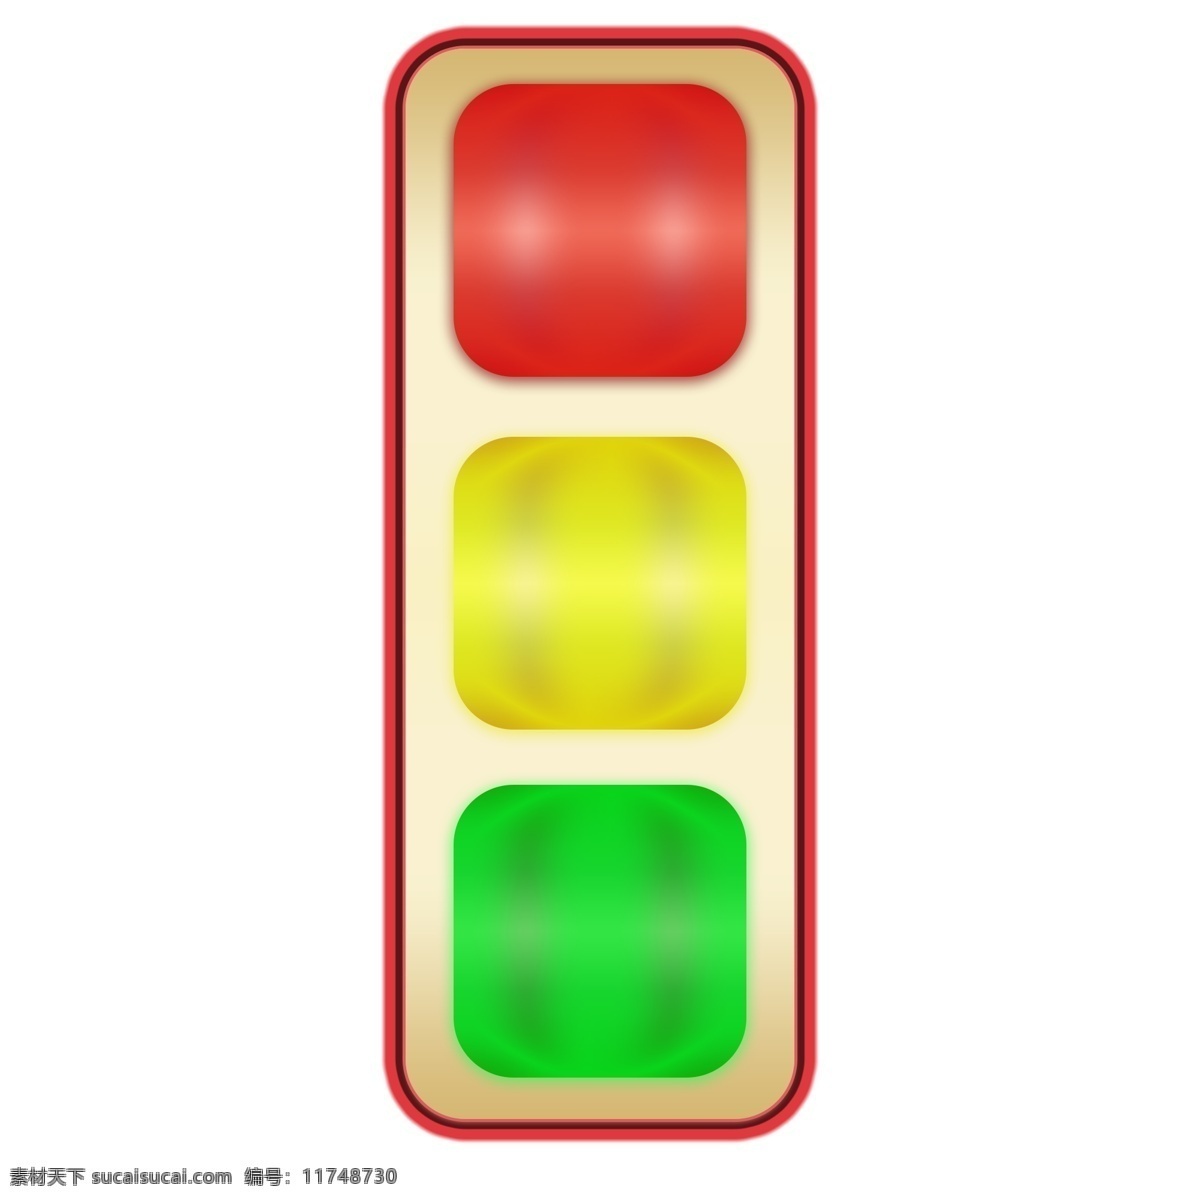 红绿灯 发光 图案 分 图 层 分图层 圆角矩形 可商用 渐变